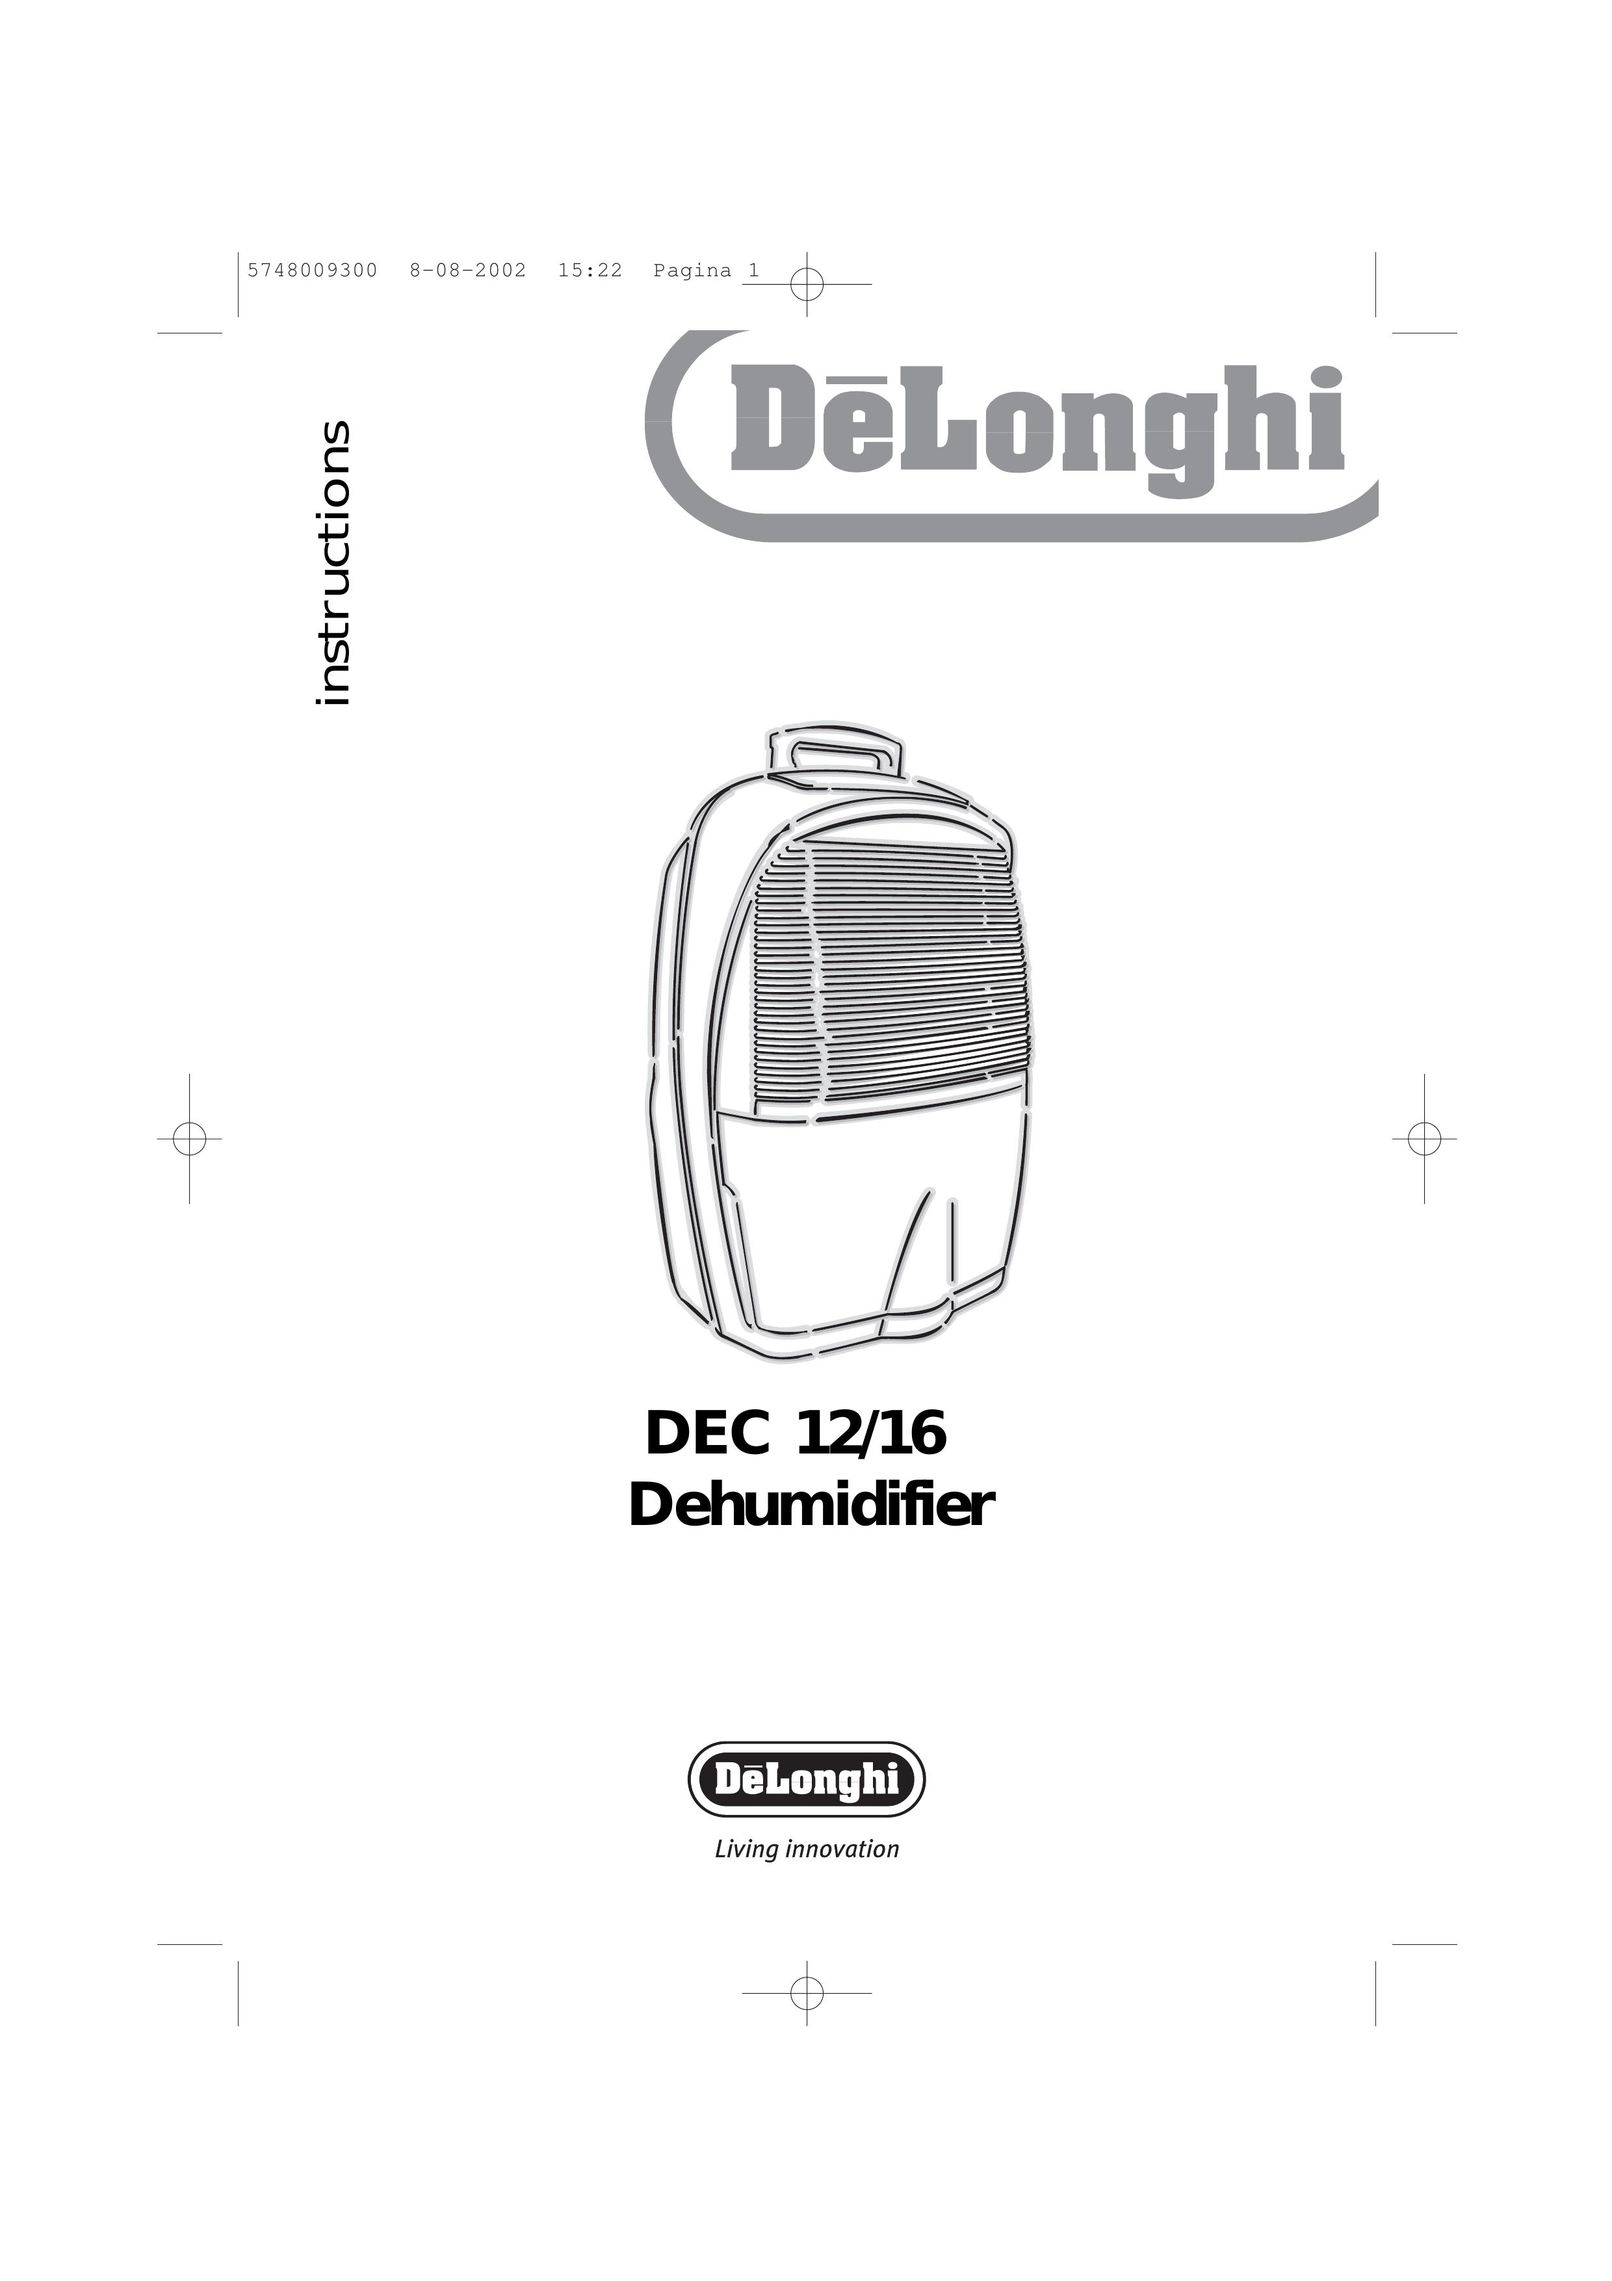 DeLonghi DEC12 Dehumidifier User Manual